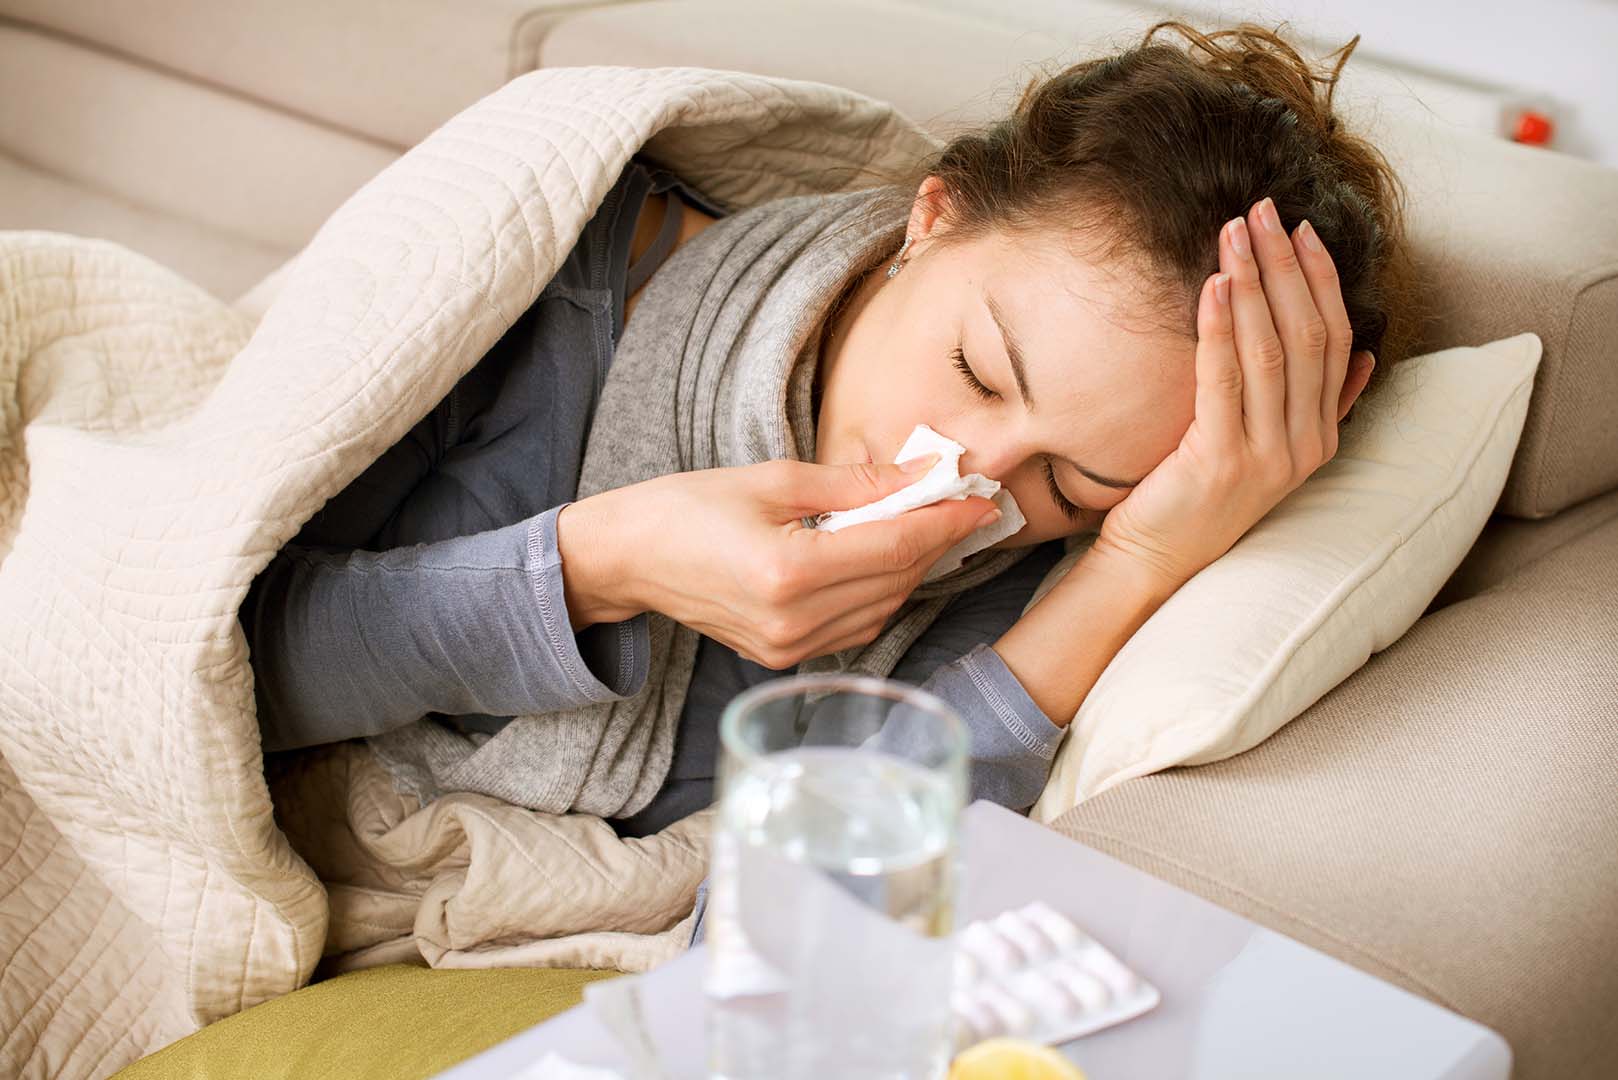 ¿Cómo saber si es un resfriado, gripe o covid? Los expertos explican las diferencias entre las enfermedades2 min read